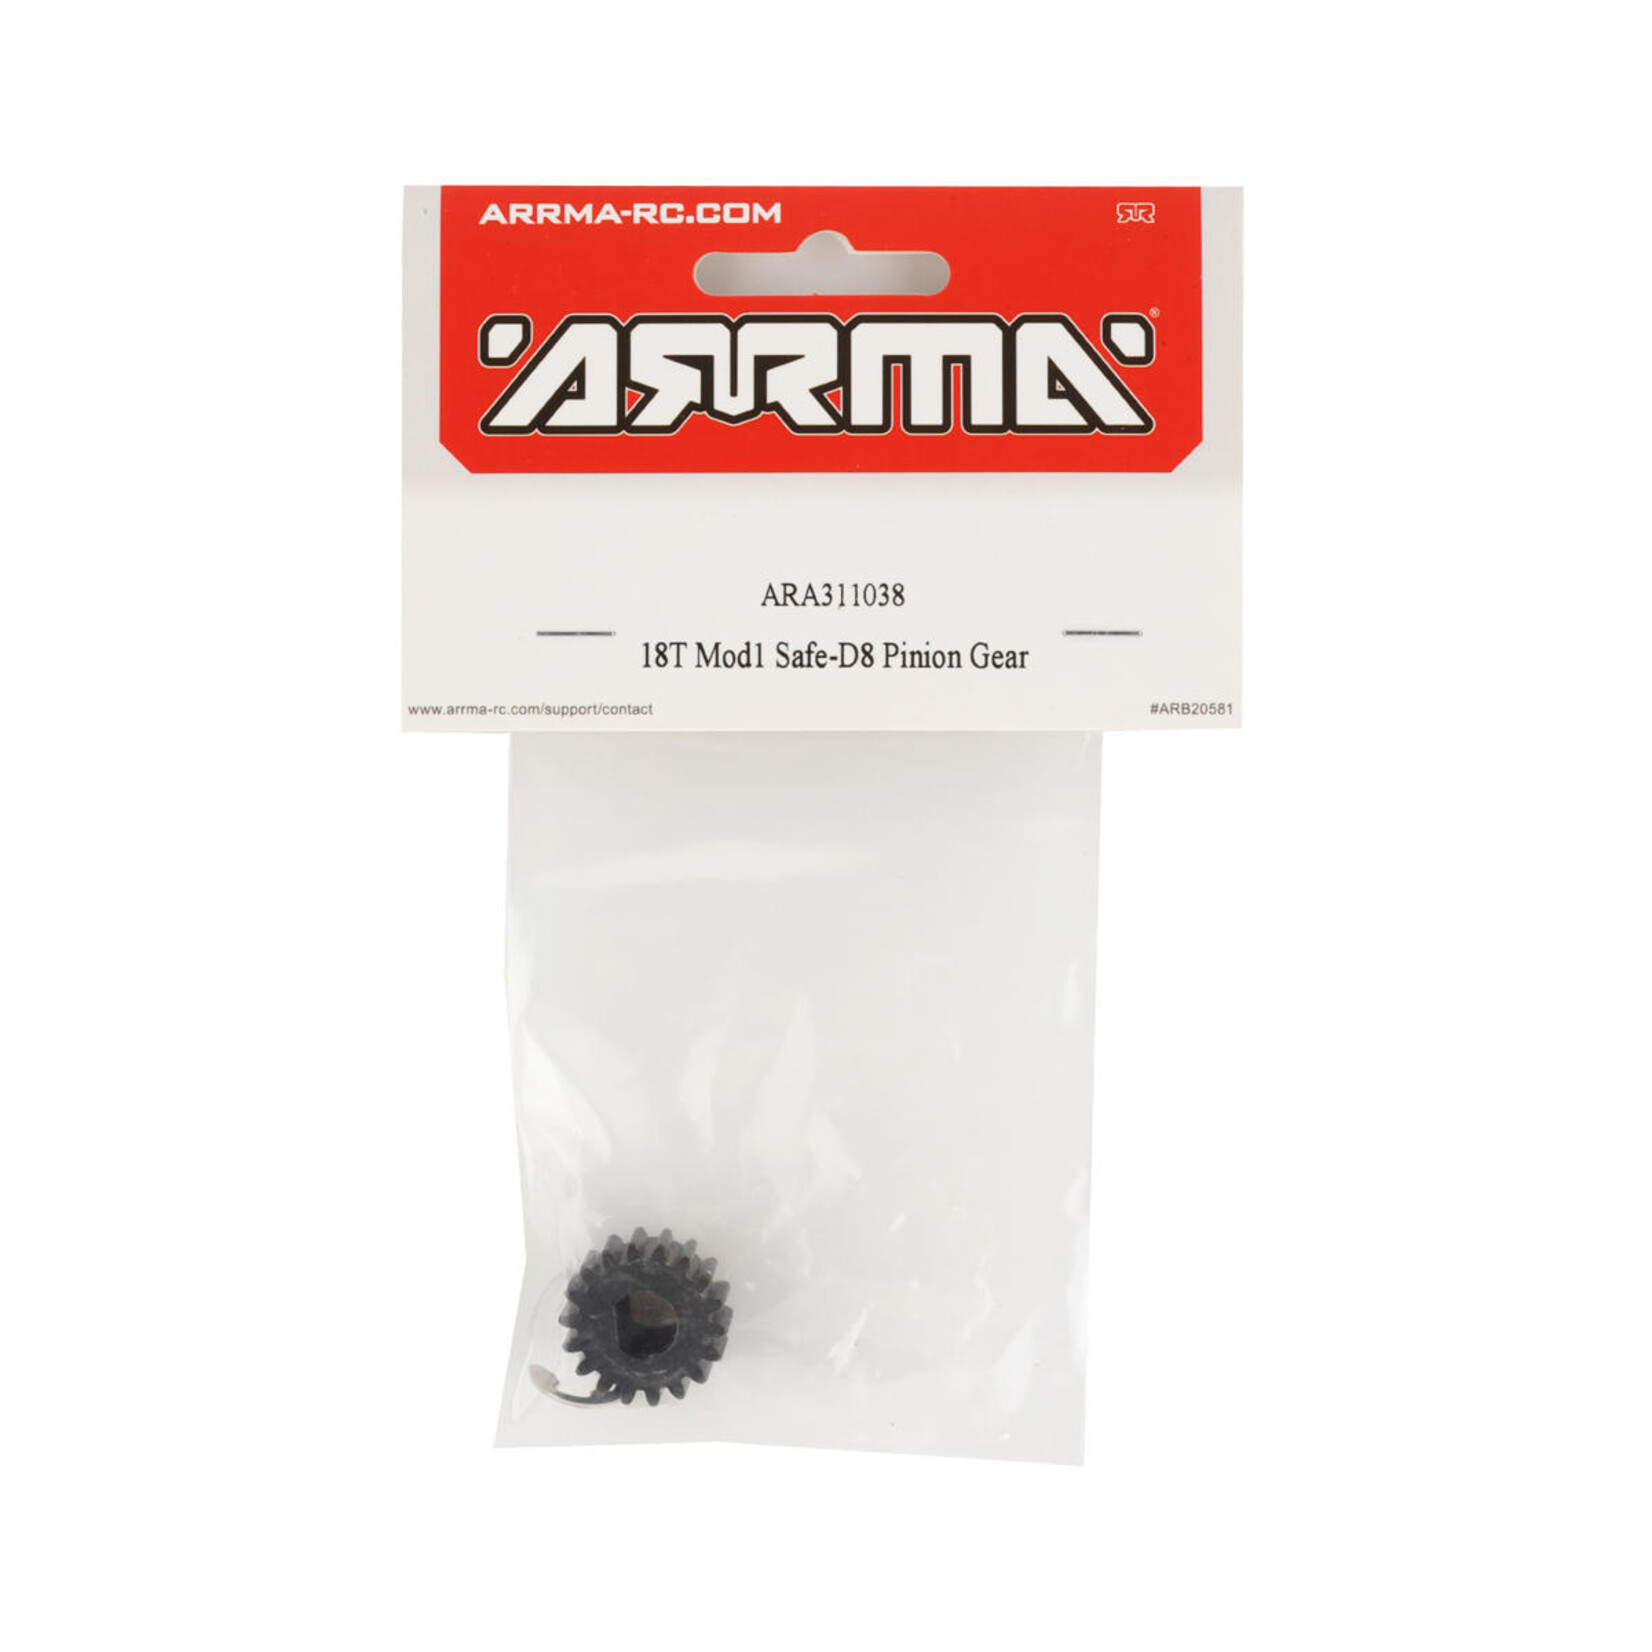 ARRMA Arrma Safe-D8 Mod1 Pinion Gear (18T) #ARA311038